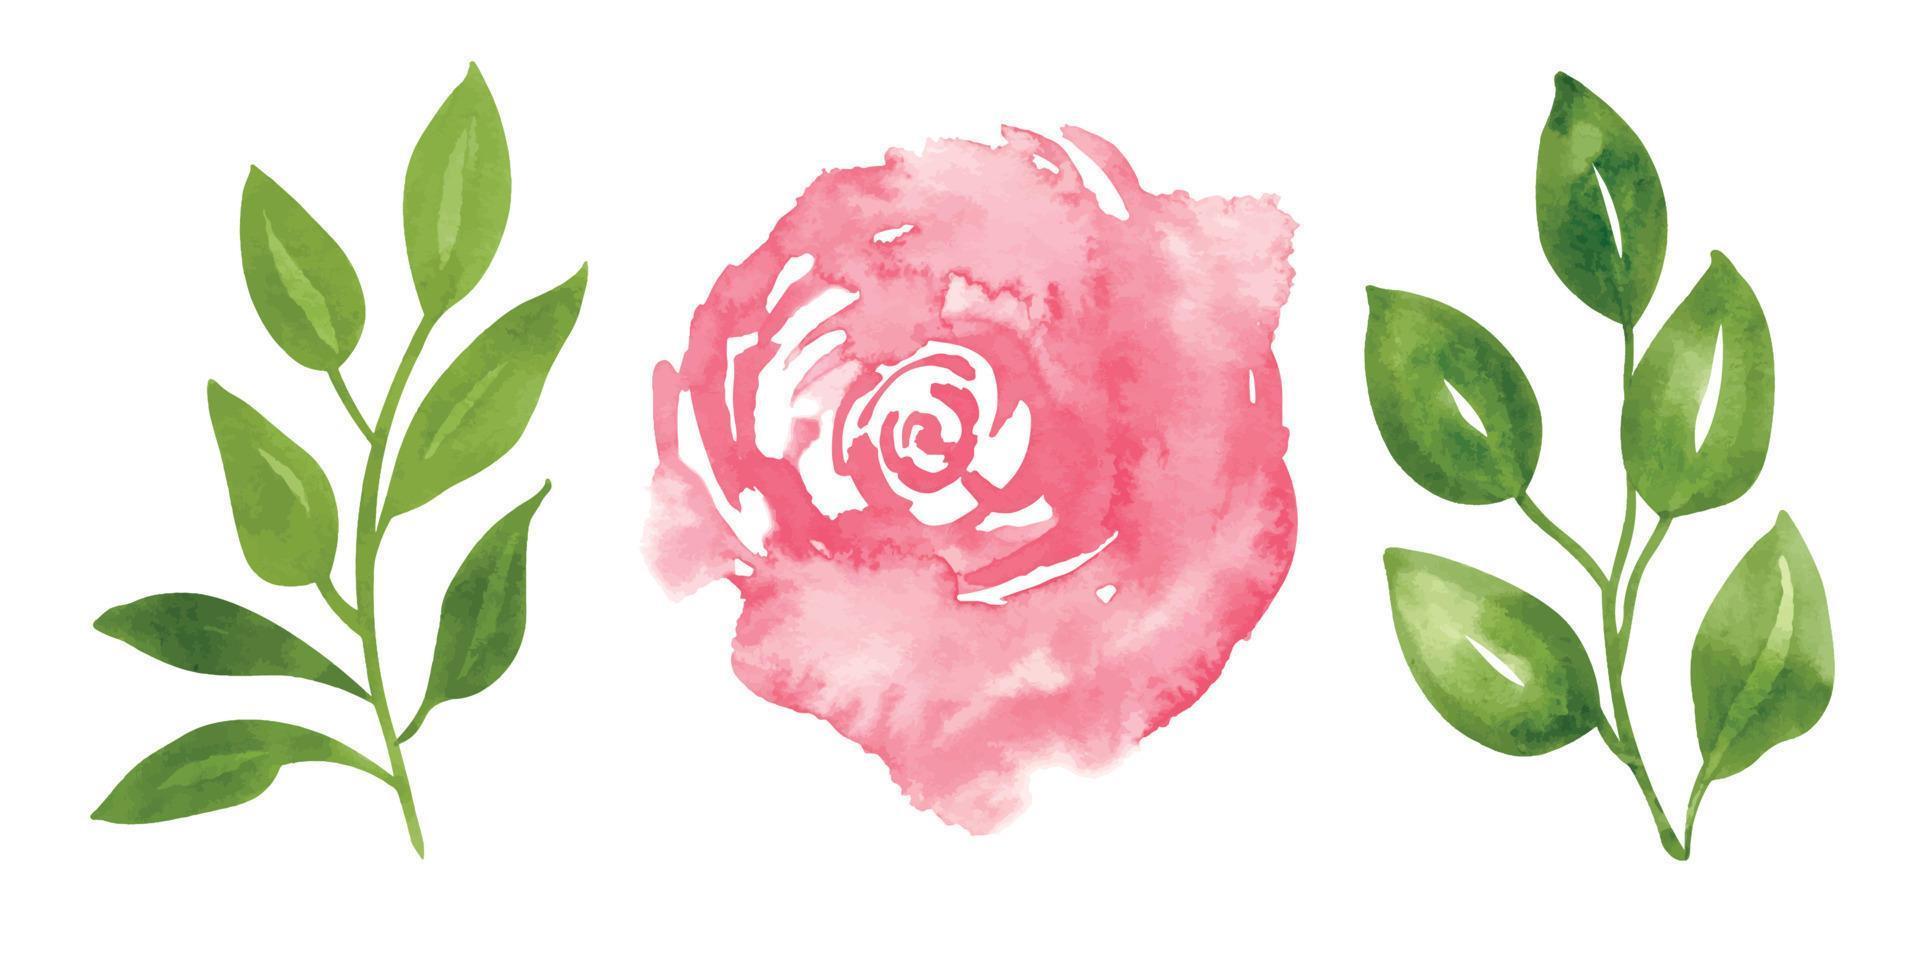 ensemble floral aquarelle avec fleur rose rose rouge et branches avec feuilles vertes. illustration dessinée à la main pour cartes de voeux ou invitations de mariage sur fond isolé. dessin abstrait aquarelle vecteur